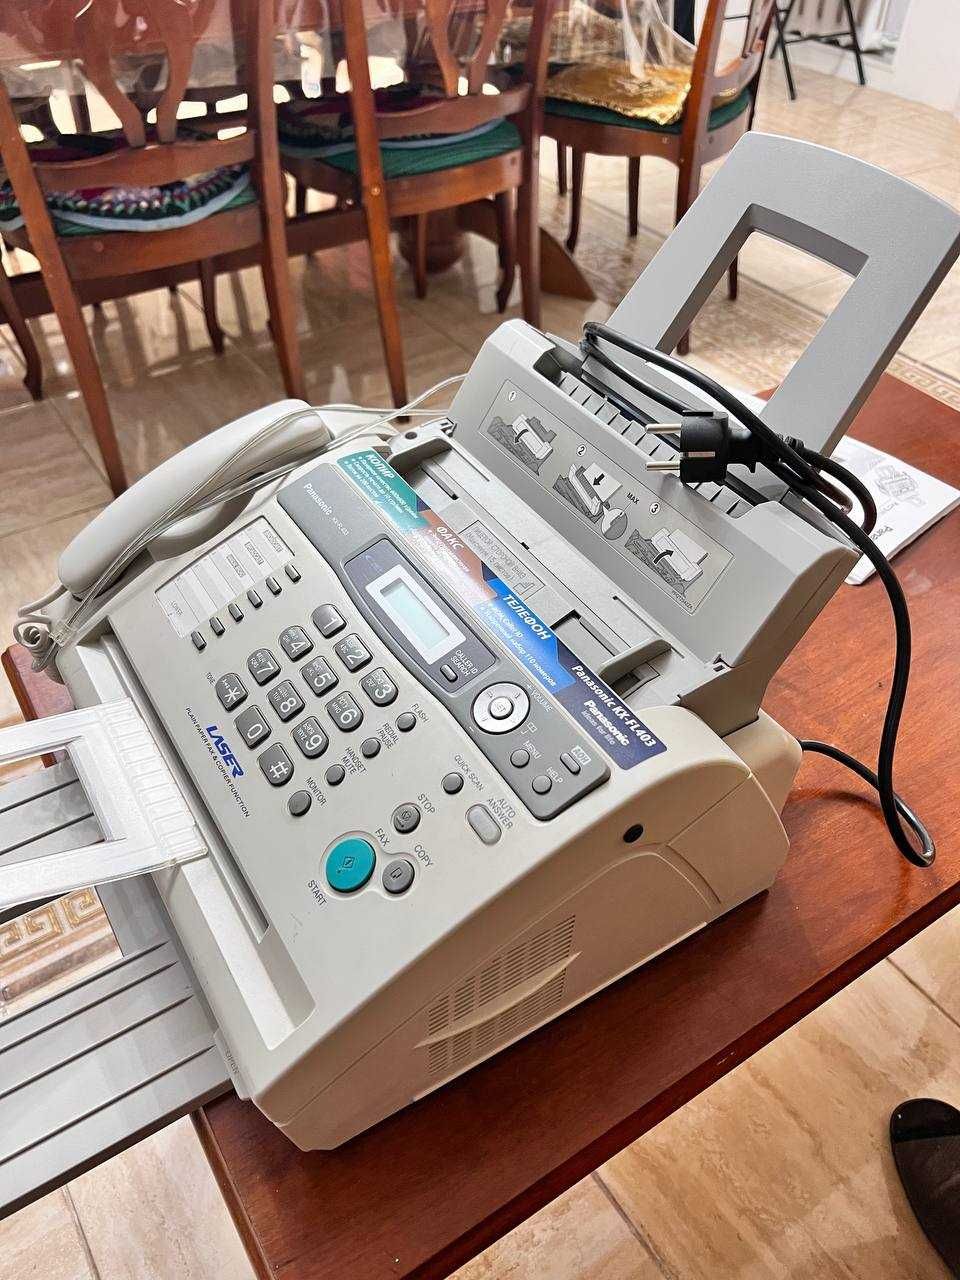 Продам рабочий факс, принтер, телефон в одном лице